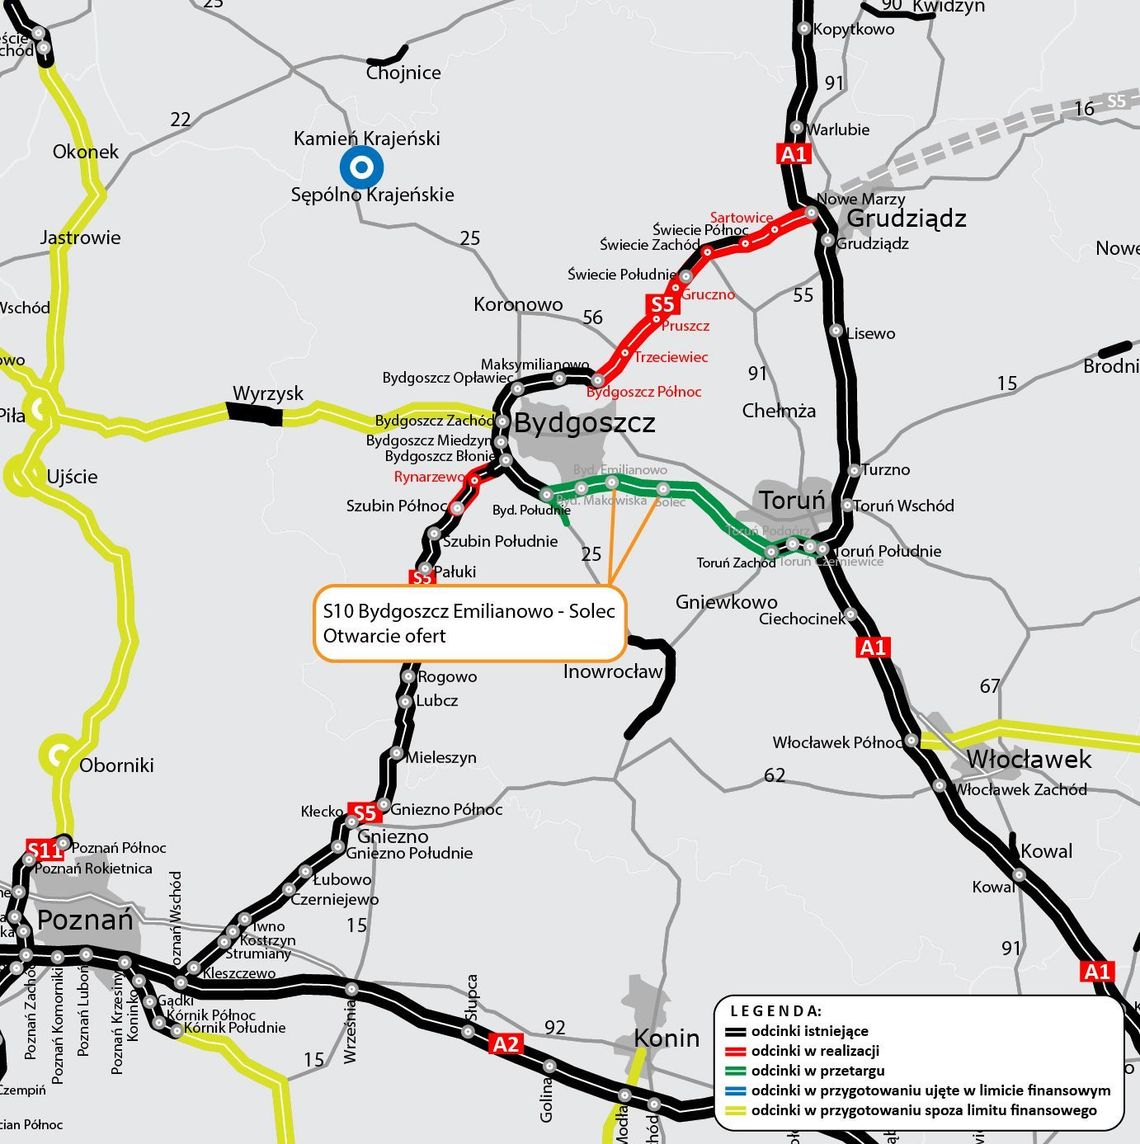 Znane są już oferty na ostatni z czterech odcinków S10 między Bydgoszczą, a Toruniem